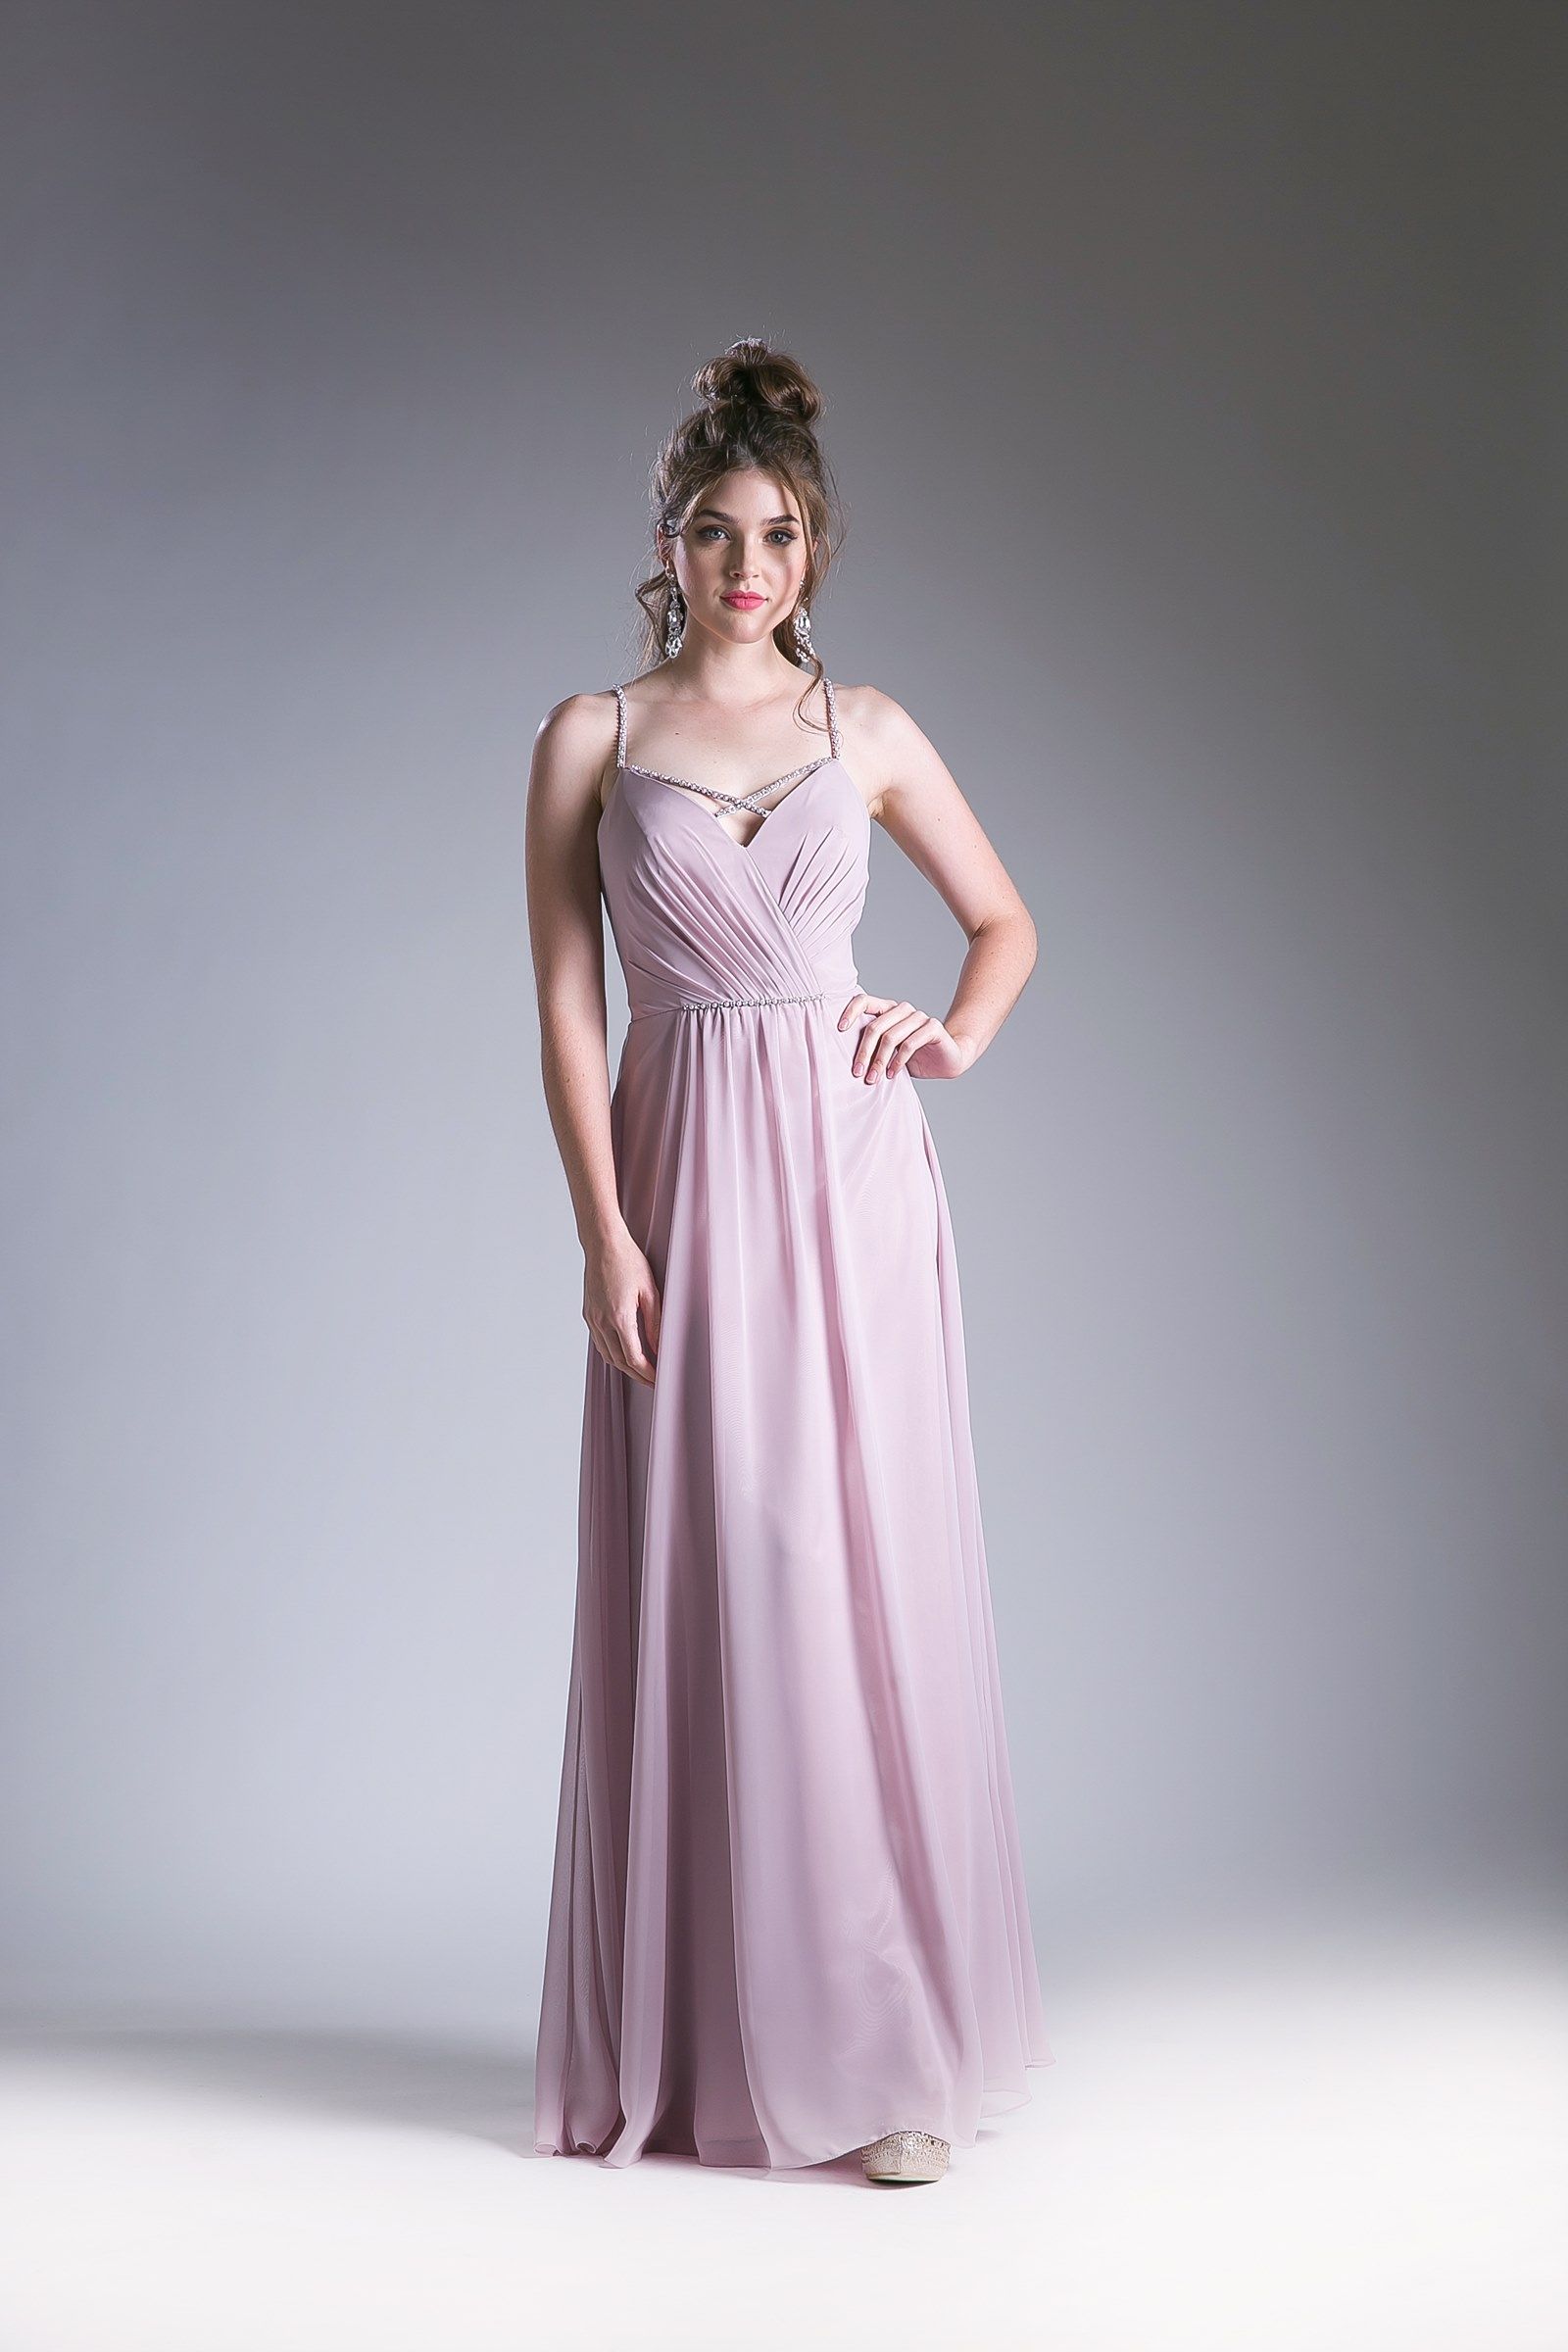 Cinderella Divine -1010 Crisscross Neck Chiffon Long Dress